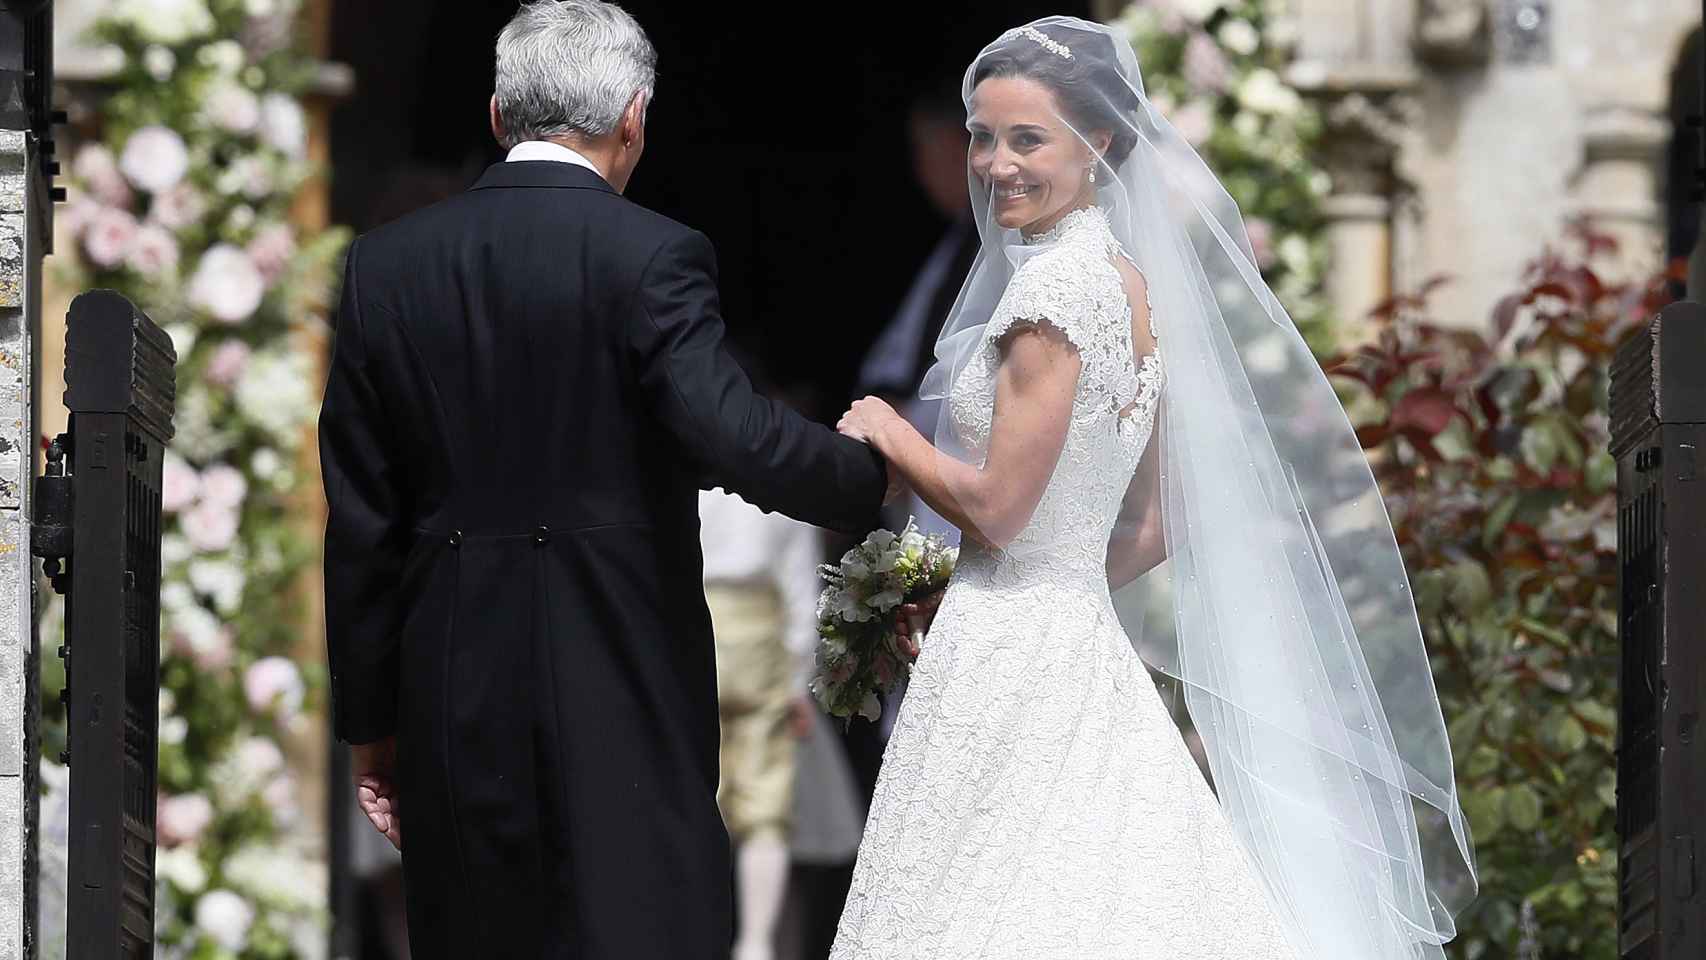 La boda de Pippa Middleton y James Matthews, en imágenes